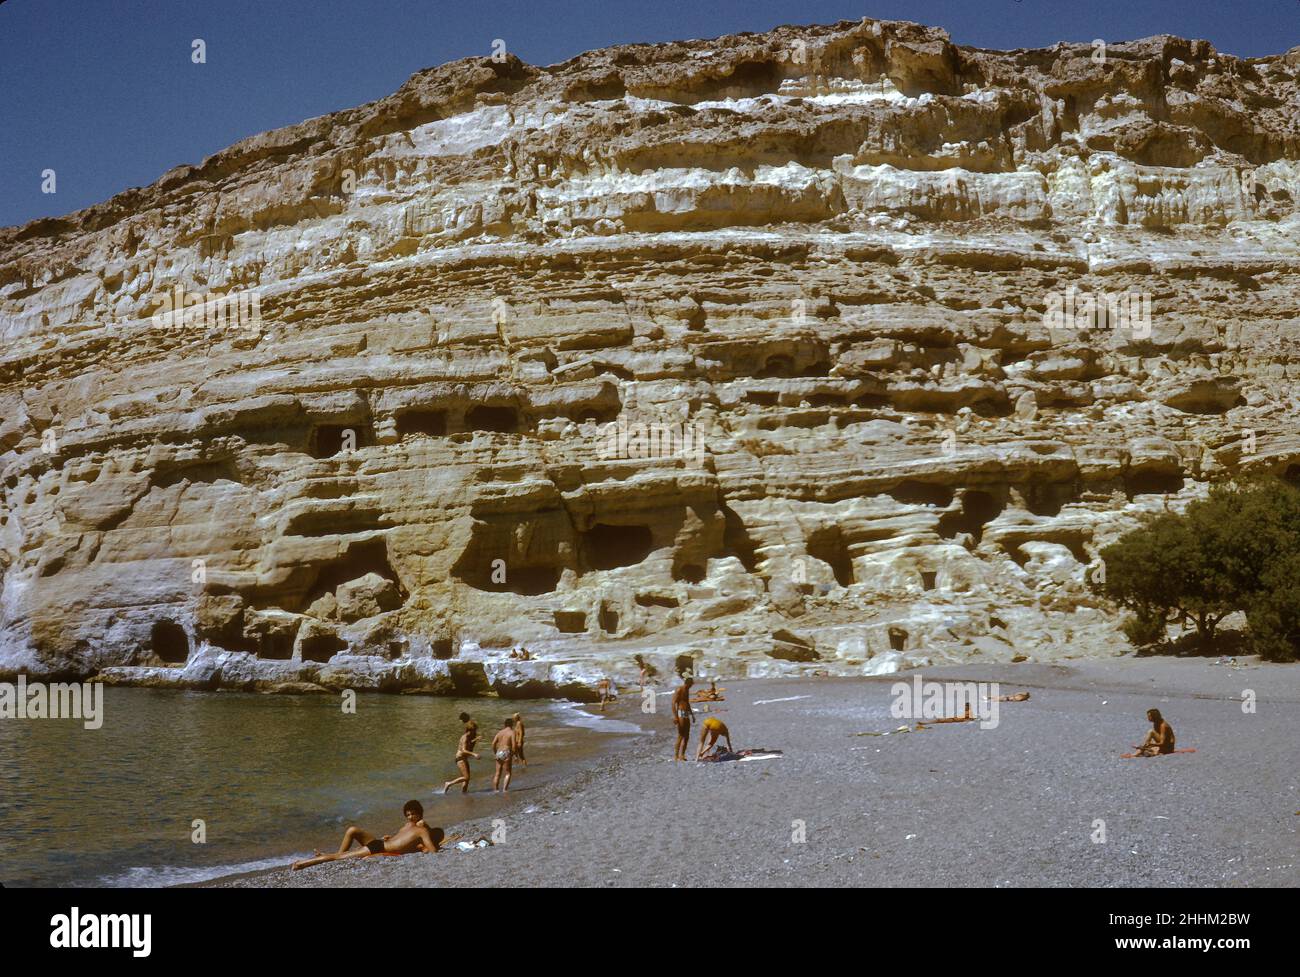 Matala Beach, con una storia che risale alla civiltà minoica, Creta, Grecia, 1974. Negli anni Sessanta e Settanta le grotte erano un rifugio privilegiato per i viaggiatori hippie o shoestring. Foto Stock